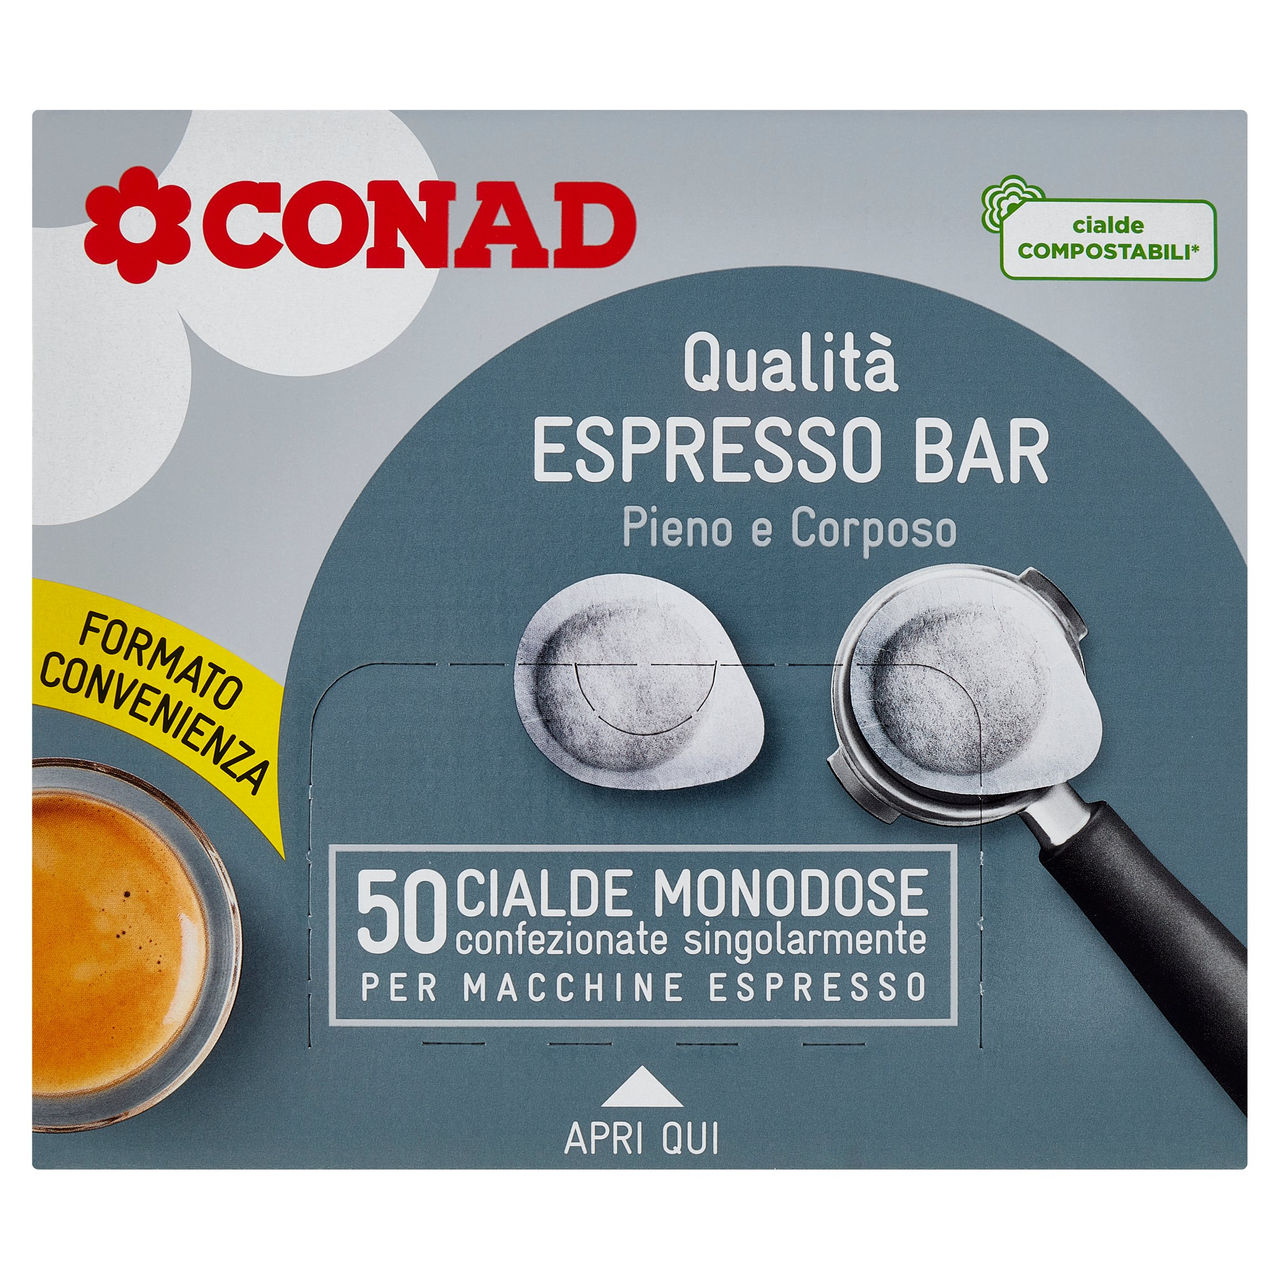 Espresso Bar 50 Cialde per Macchine Espresso Conad